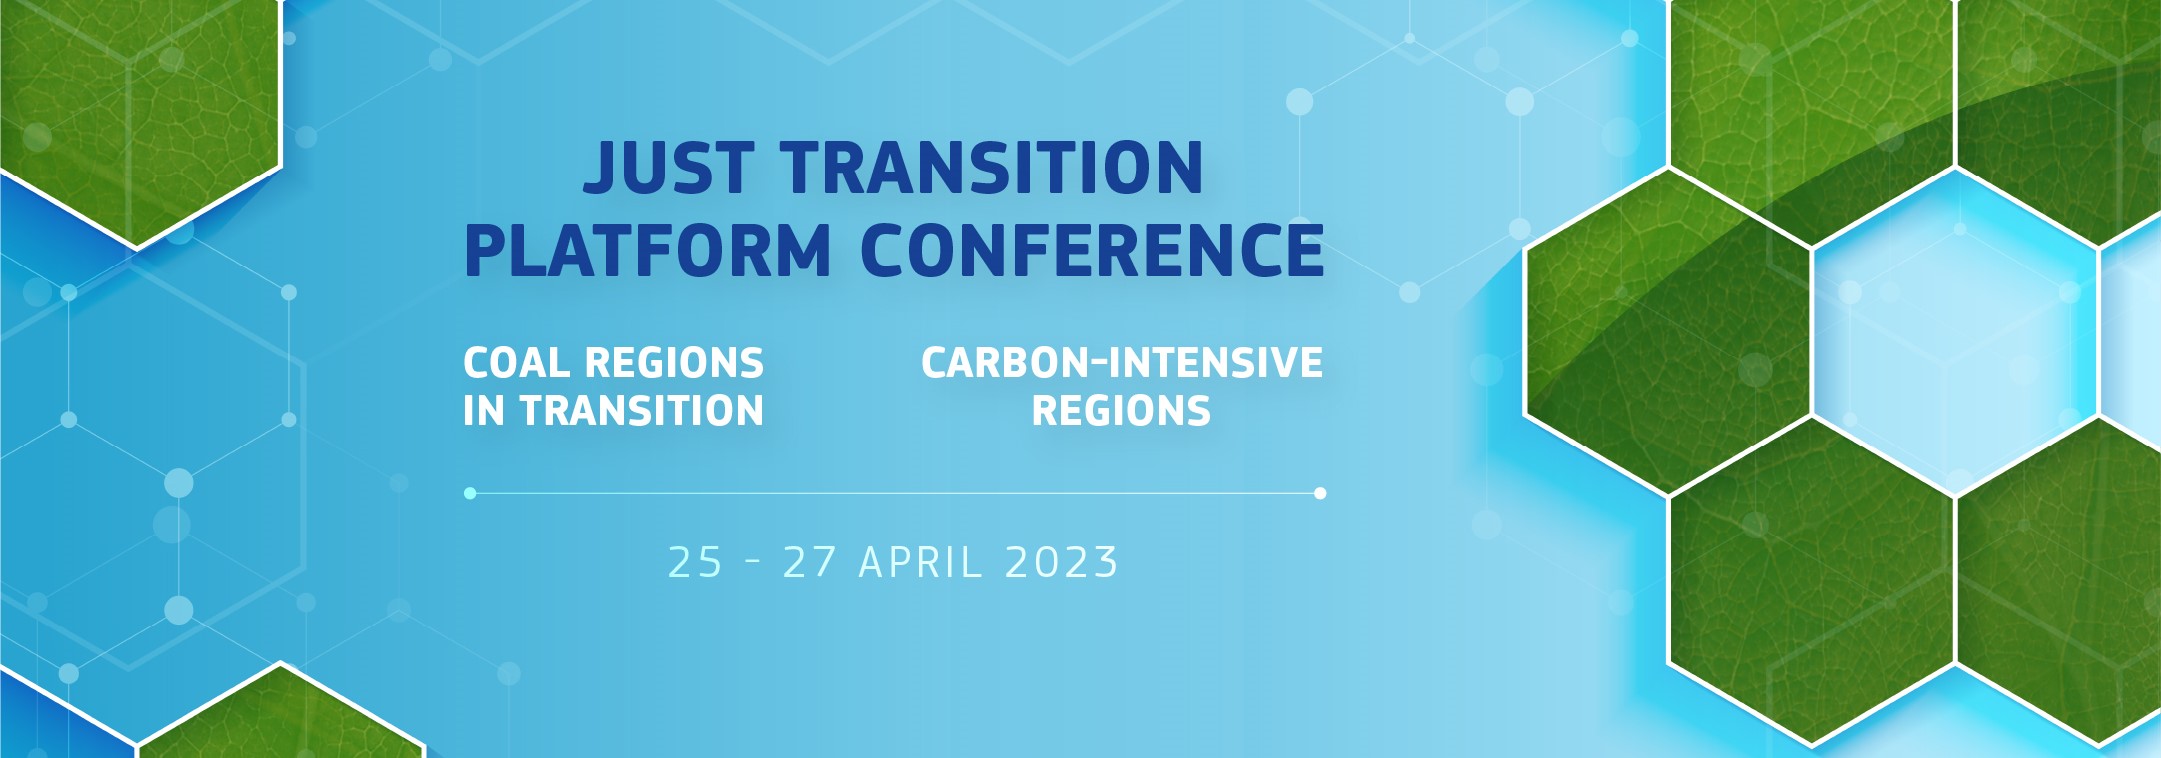 Just Transition Platform Conference – 25-27 April 2023